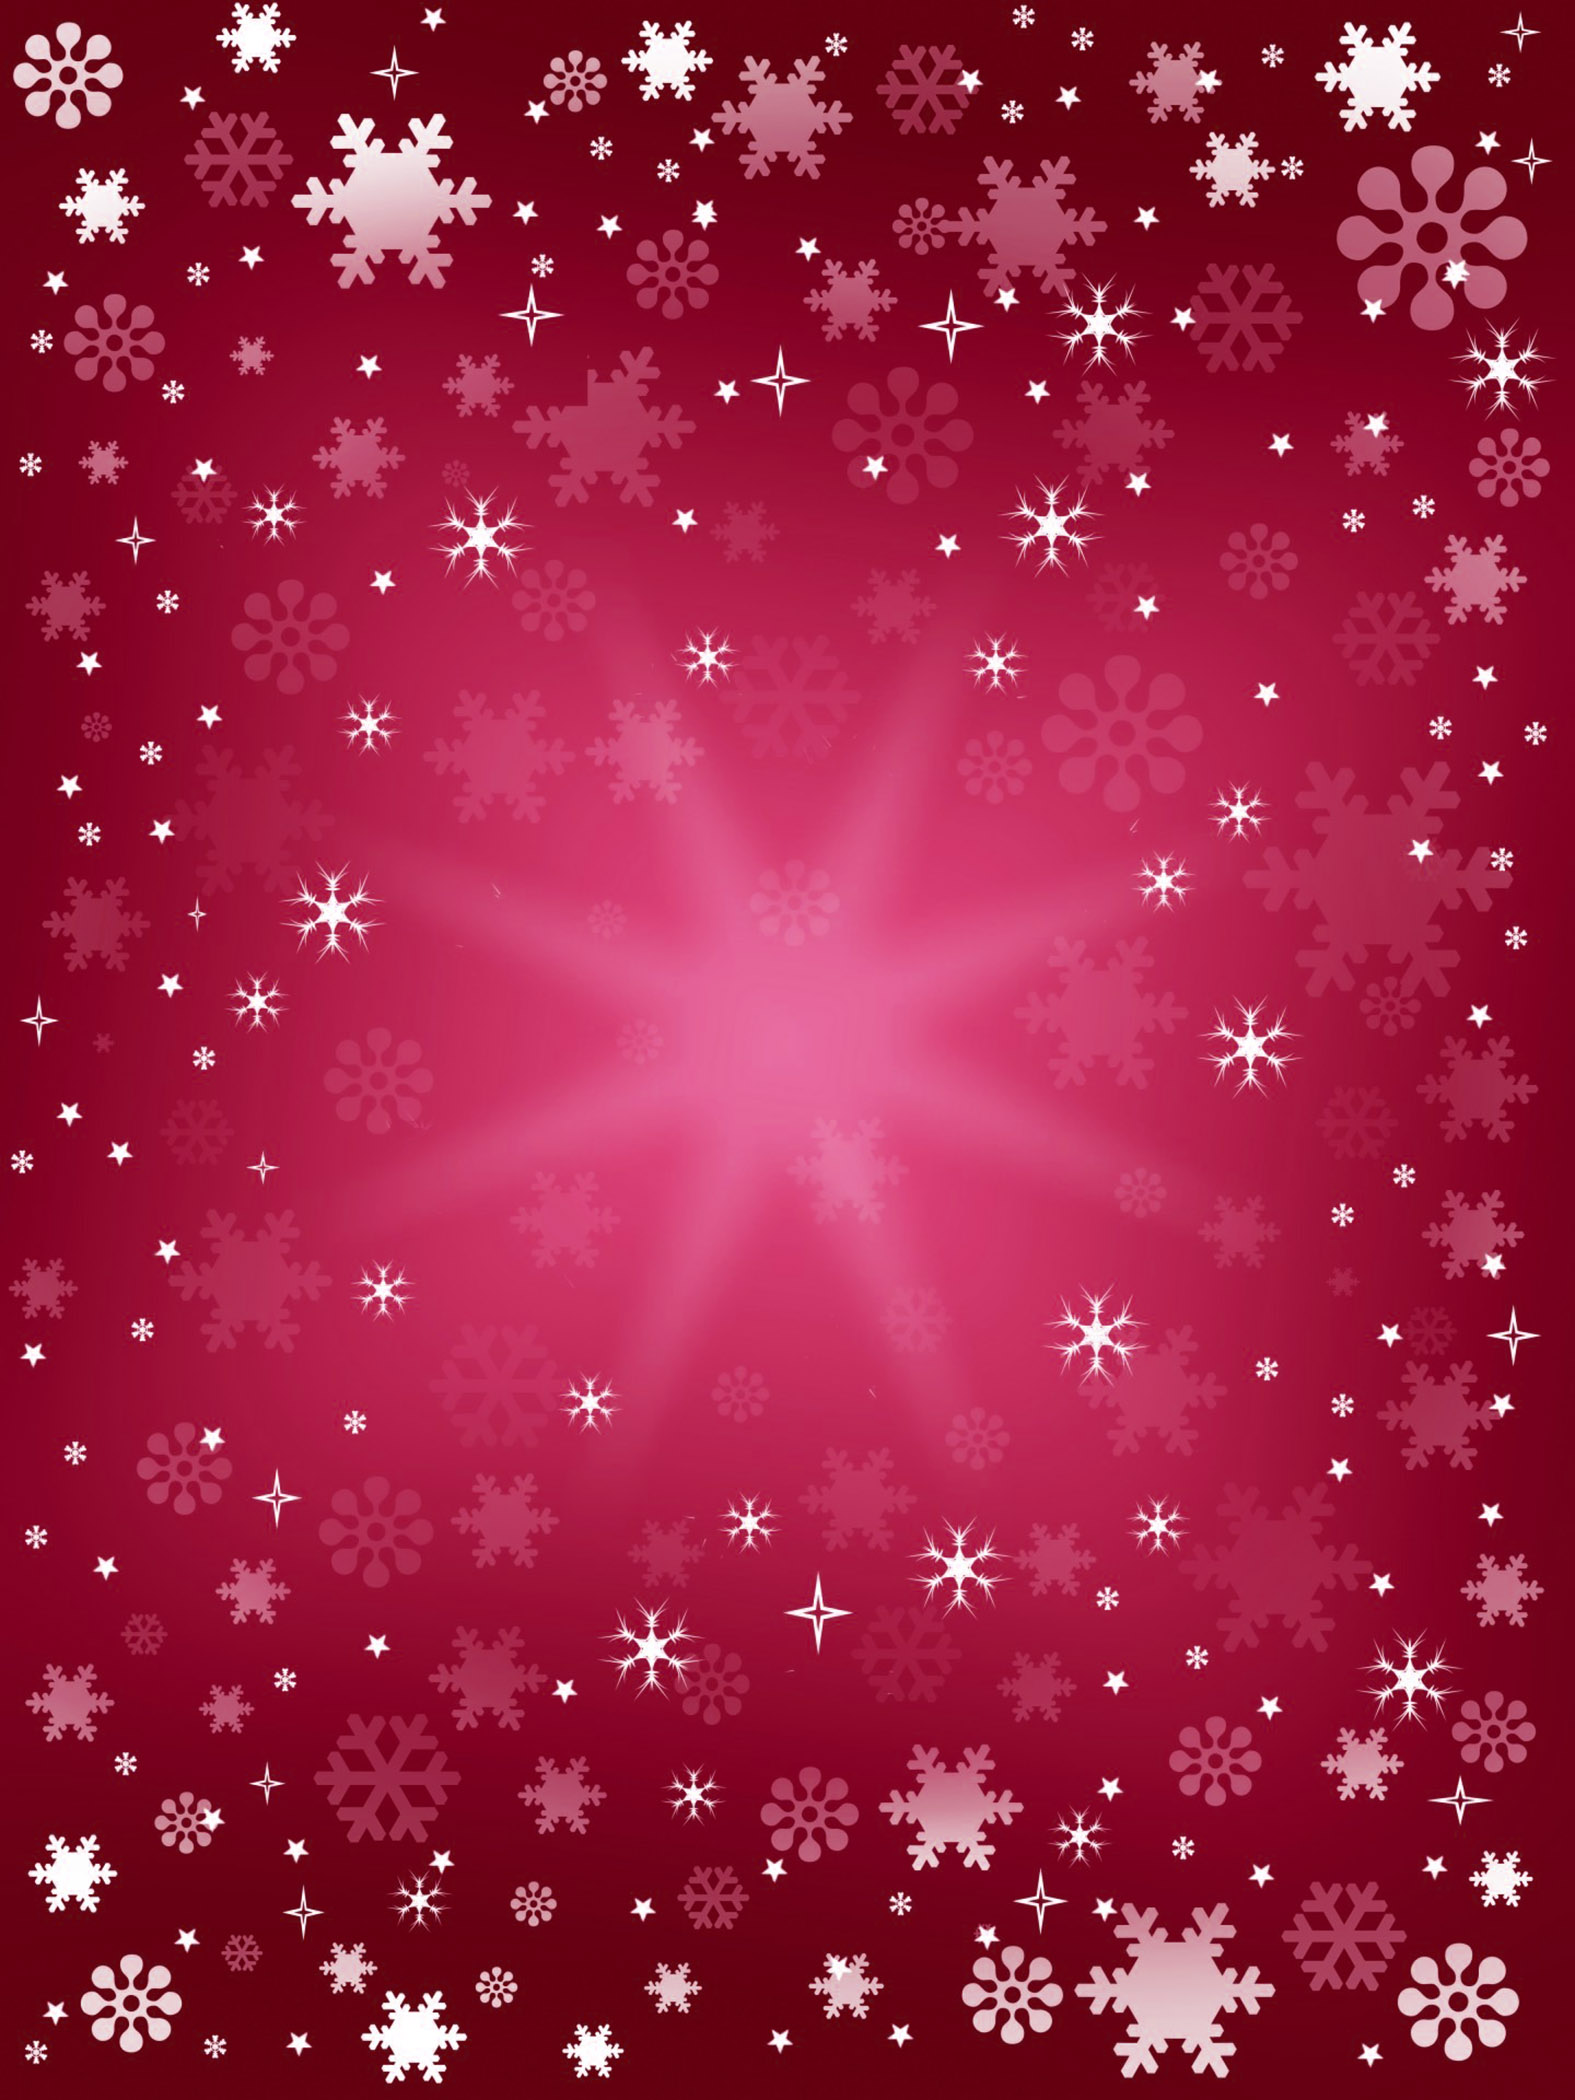 Hãy cùng nhìn vào hình ảnh phông nền Giáng sinh màu hồng tuyệt đẹp này để cảm nhận không khí lễ hội ấm áp và ngọt ngào nhất. Với sắc hồng tươi tắn và những họa tiết thật độc đáo, chiếc phông nền này chắc chắn sẽ khiến bạn thích thú và muốn sử dụng ngay lập tức. Chuẩn bị cho một mùa Giáng sinh tràn ngập màu sắc và hạnh phúc nhất với phông nền này nhé!